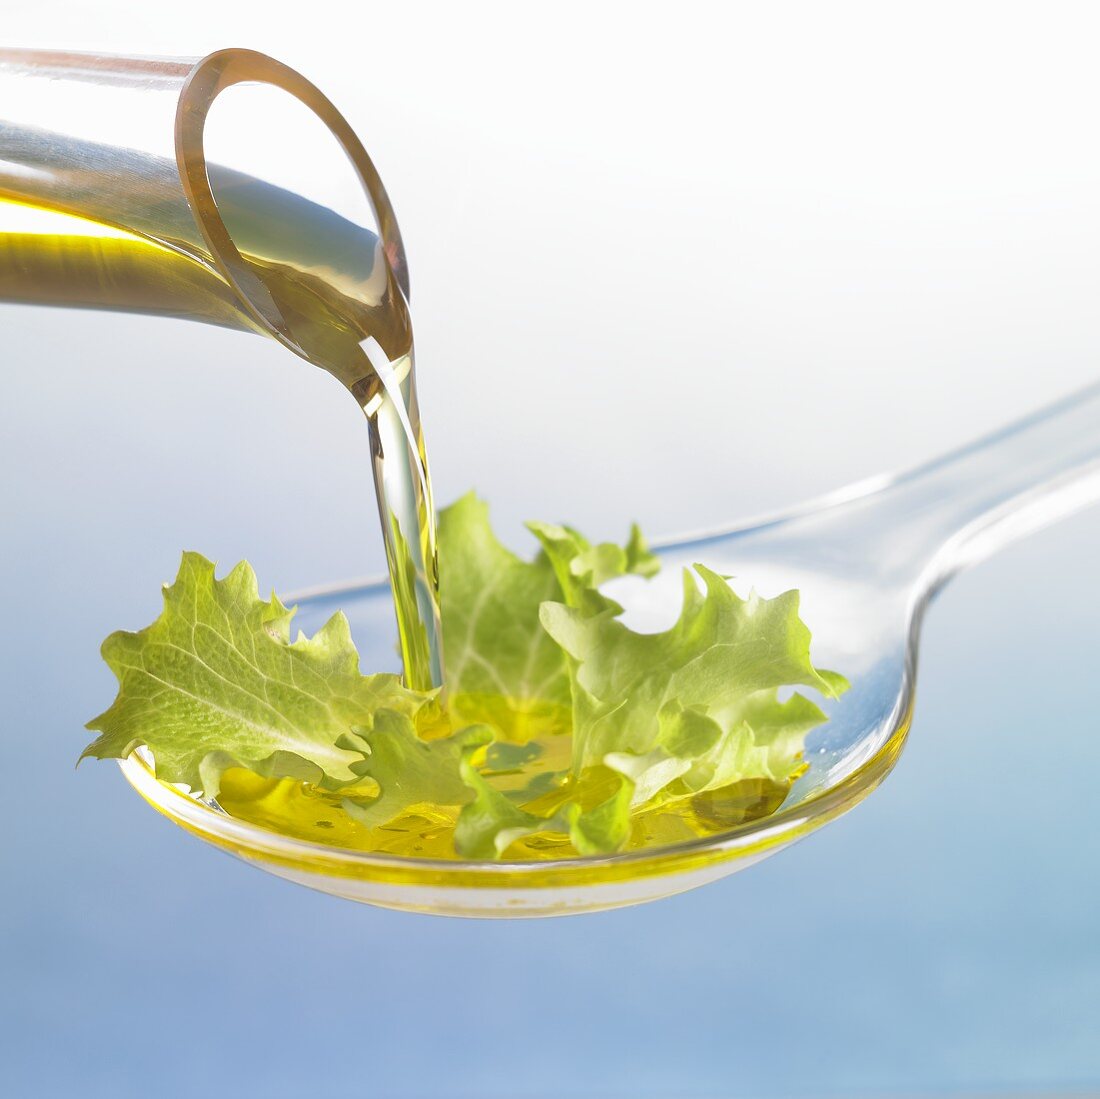 Öl fliesst auf Löffel mit Salatblatt